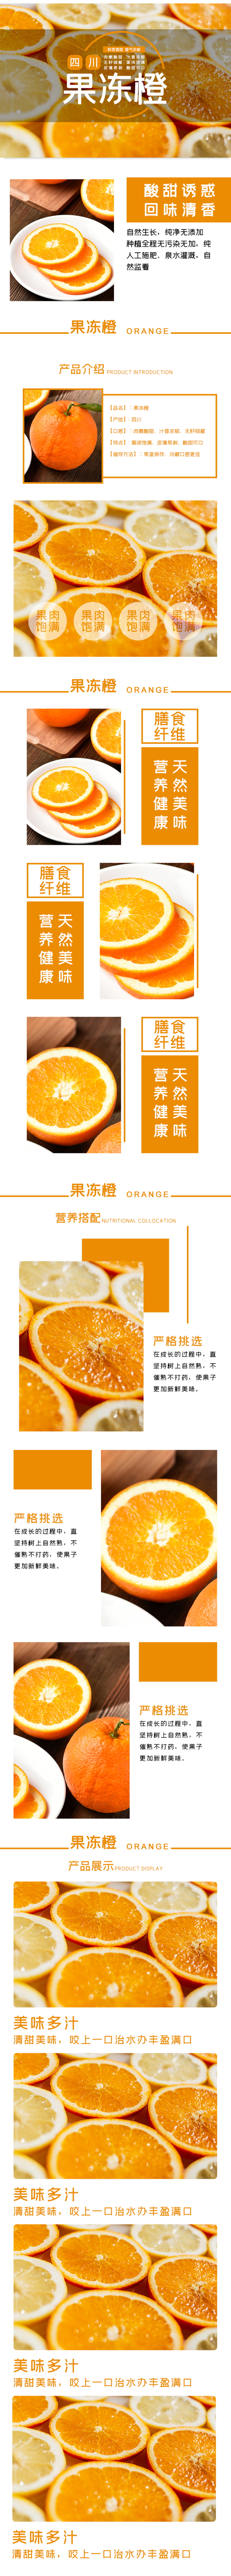 淘宝电商水果橙子详情页